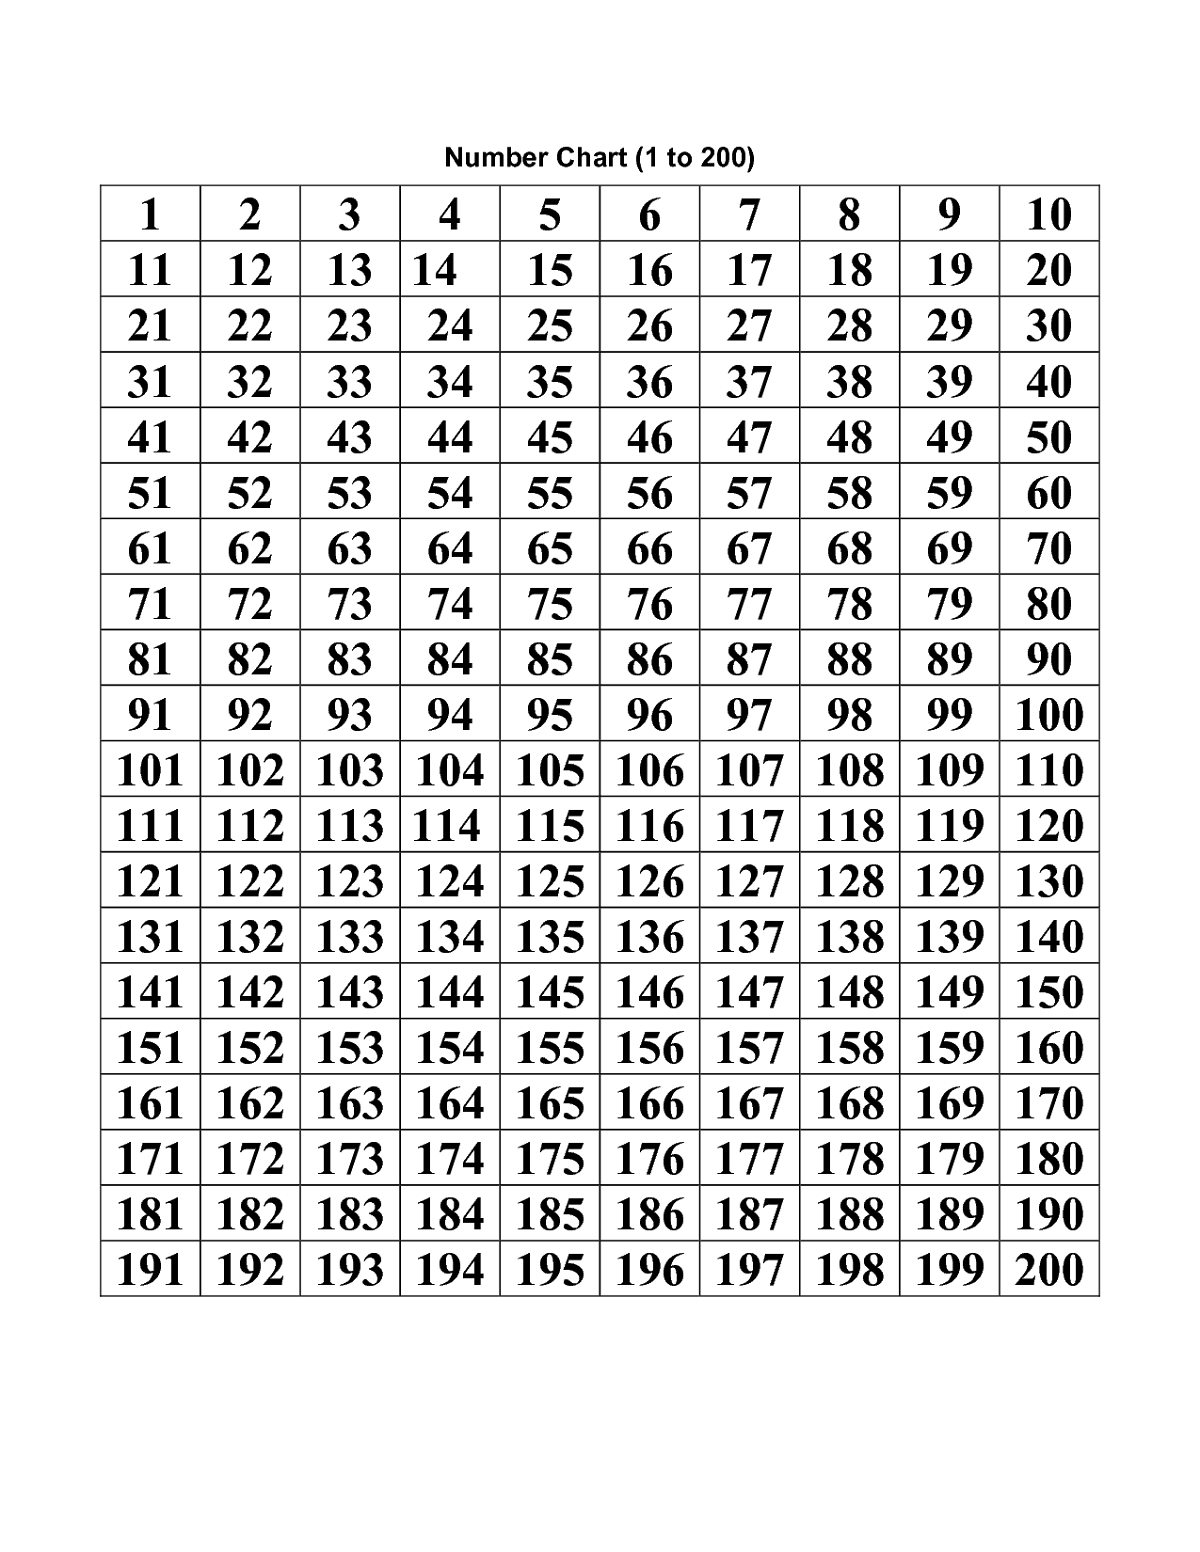 Number-Chart-1-200-Printable | Printable Numbers, Number